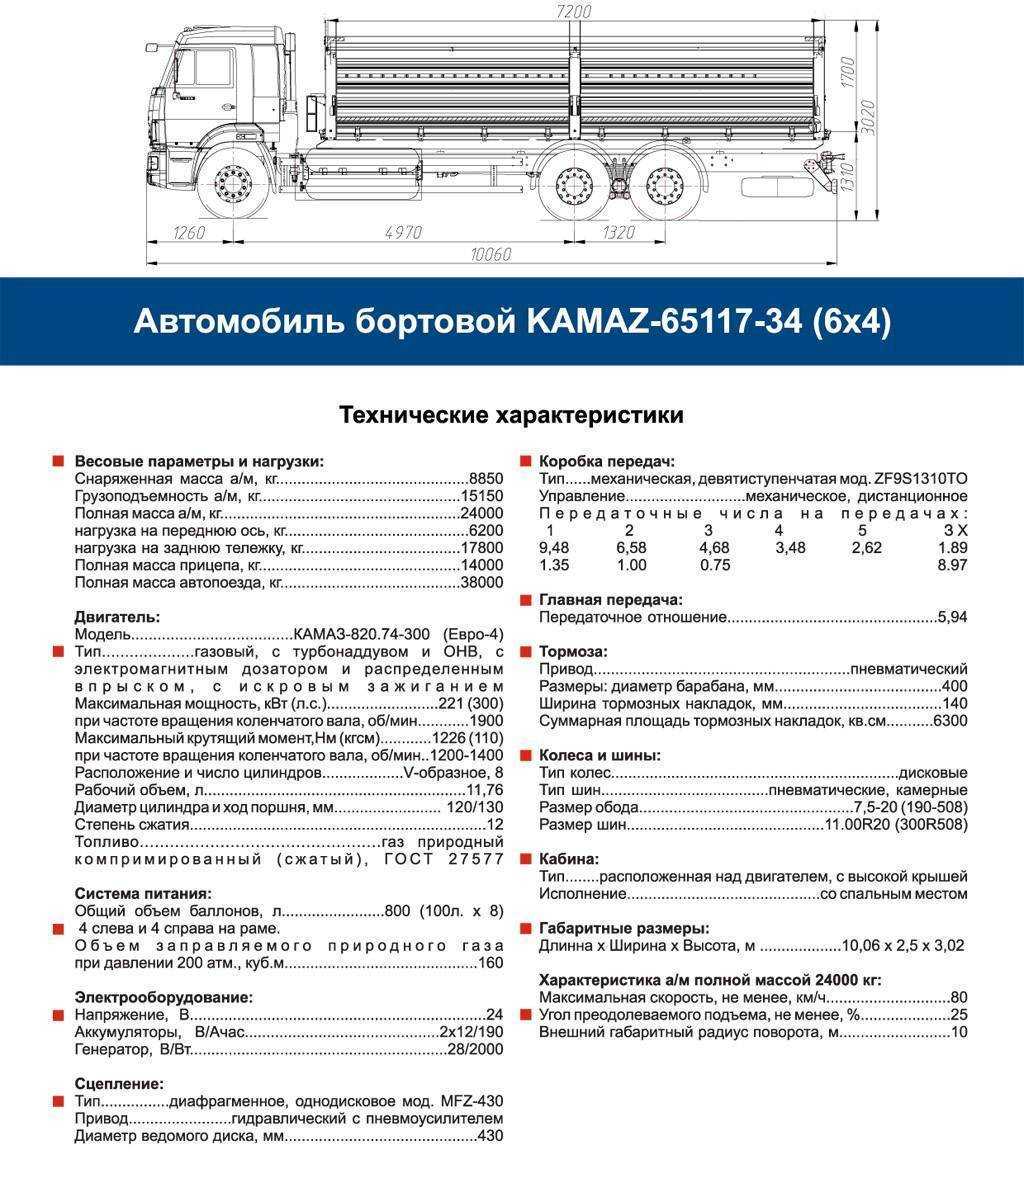 Камаз-65115: описание и технические характеристики